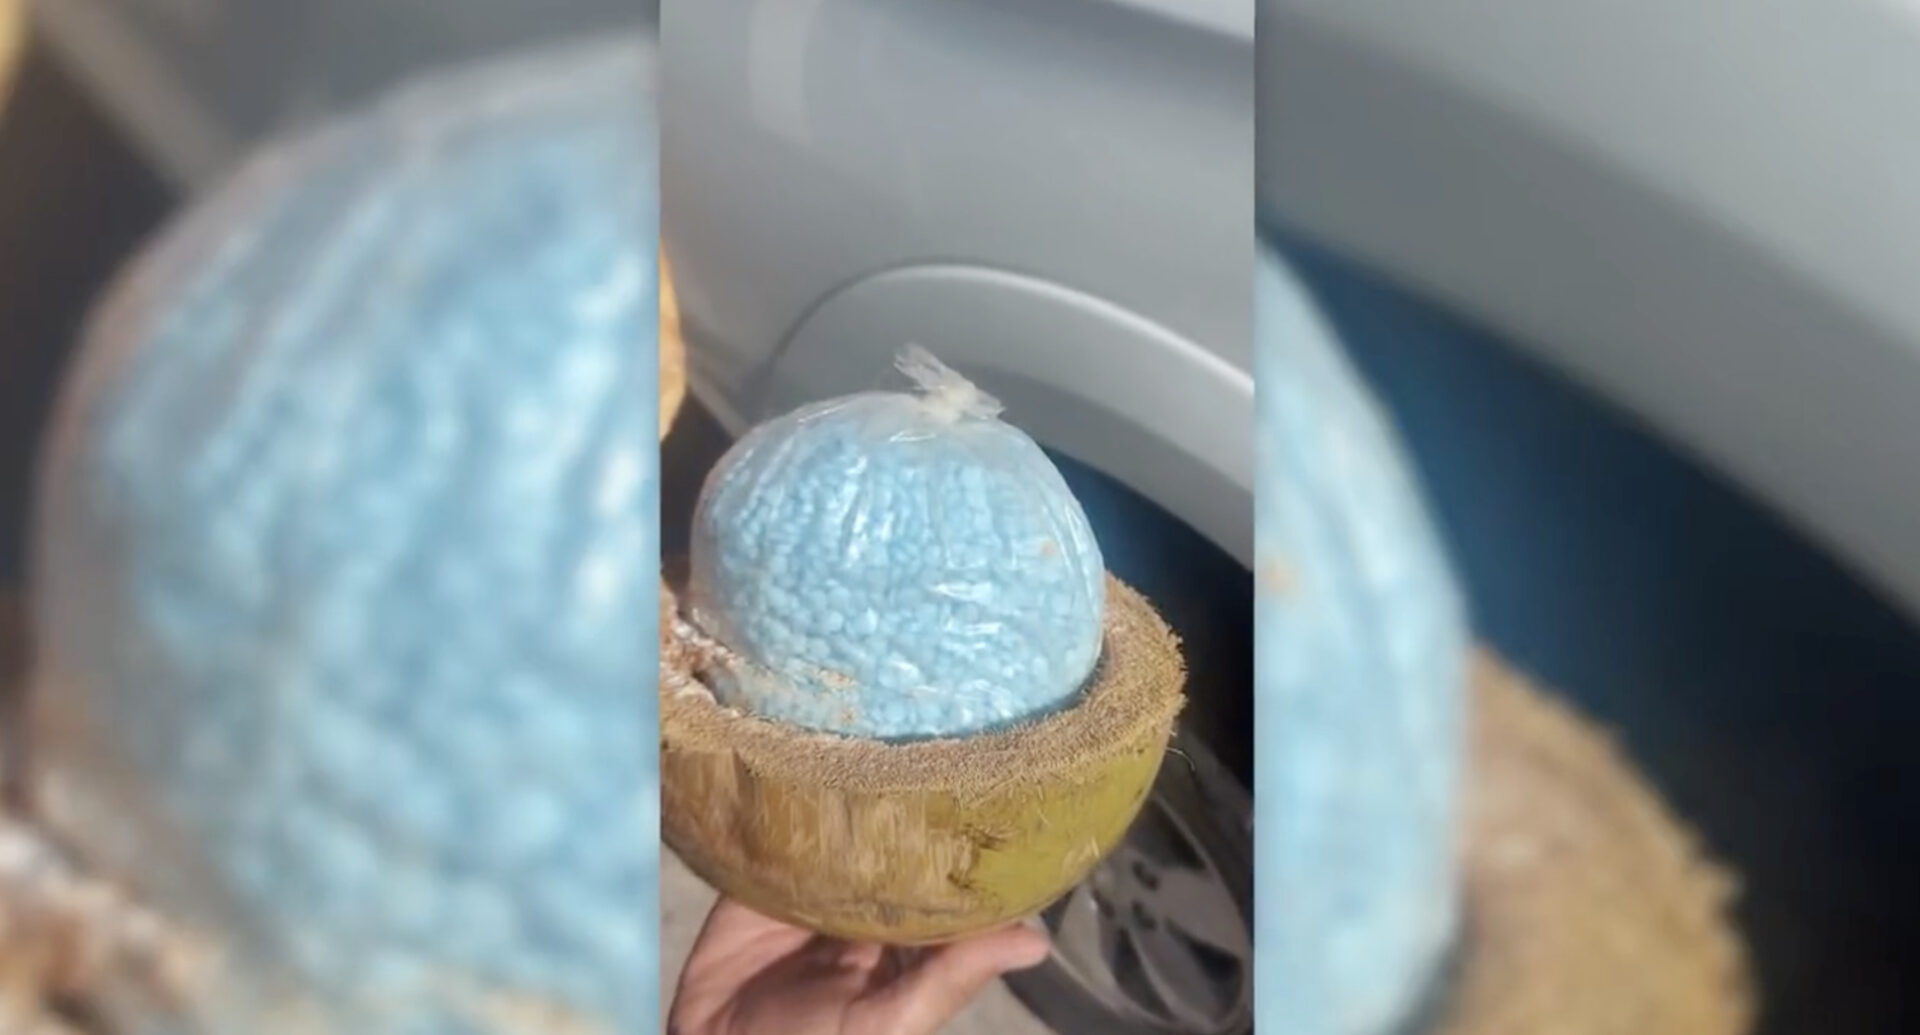 Autoridades aseguran 300 kilos de fentanilo escondidos dentro de cocos en Sonora